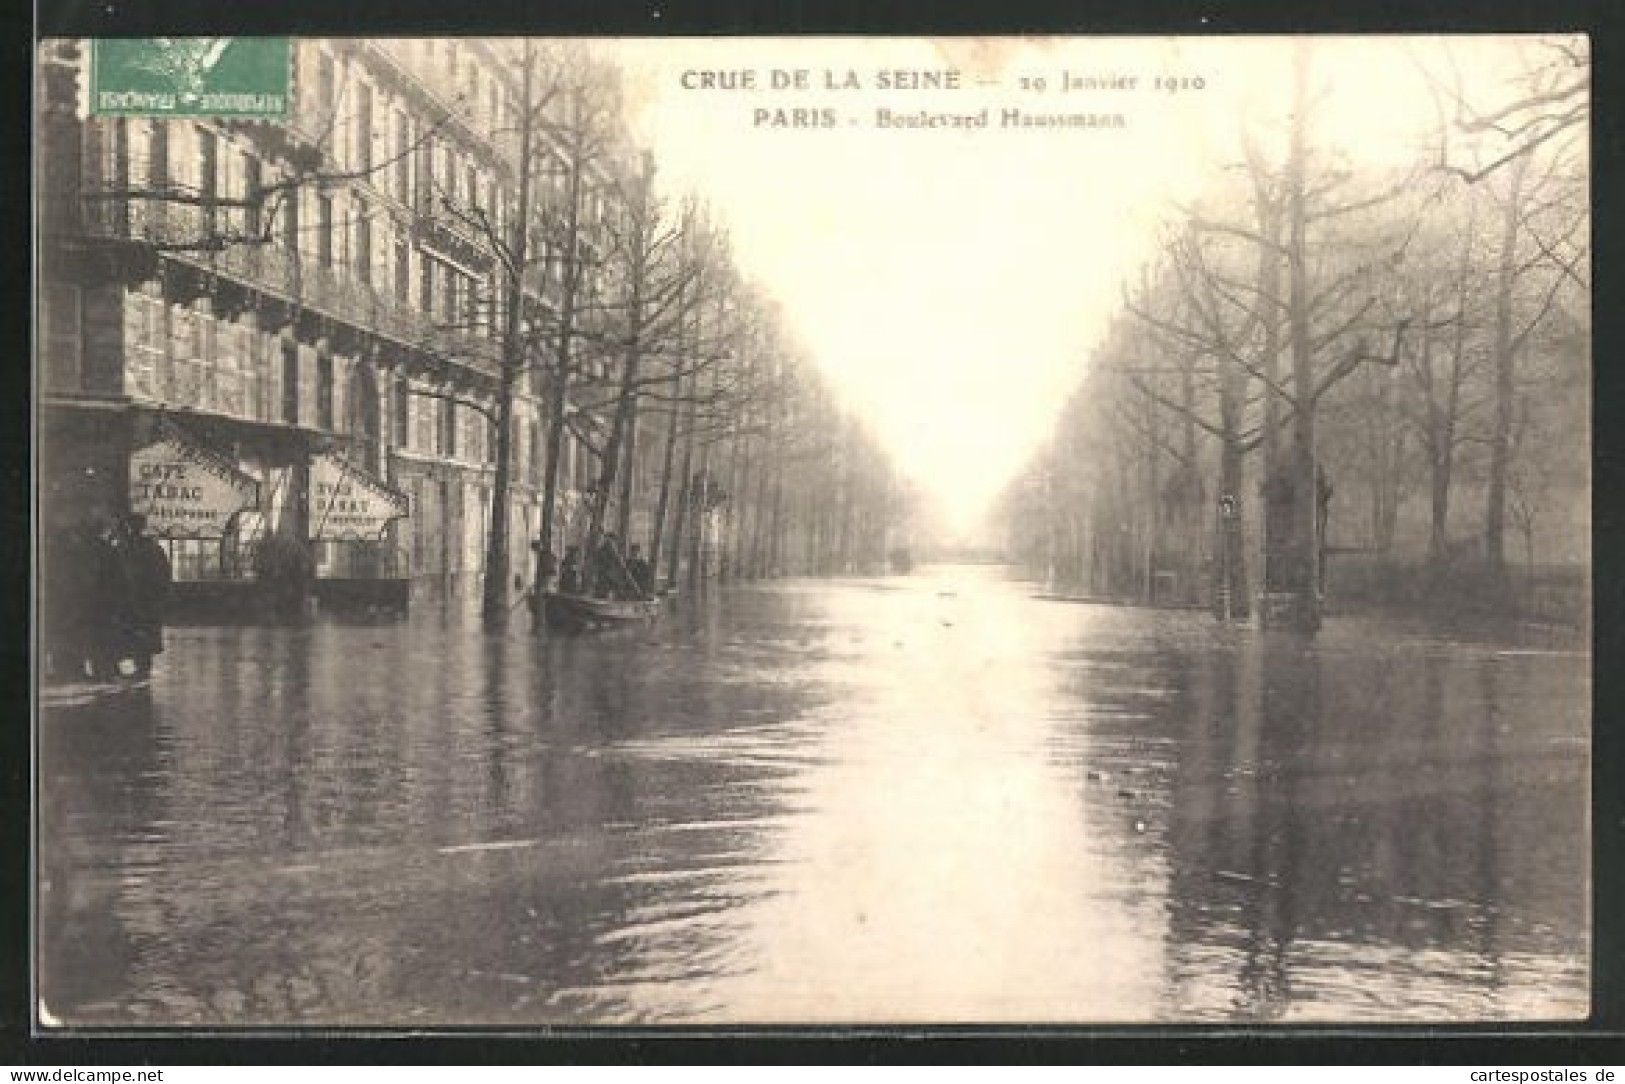 AK Crue De La Seine (29 Janvier 1910) - Paris -Boulevard Haussmann, Hochwasser  - Floods